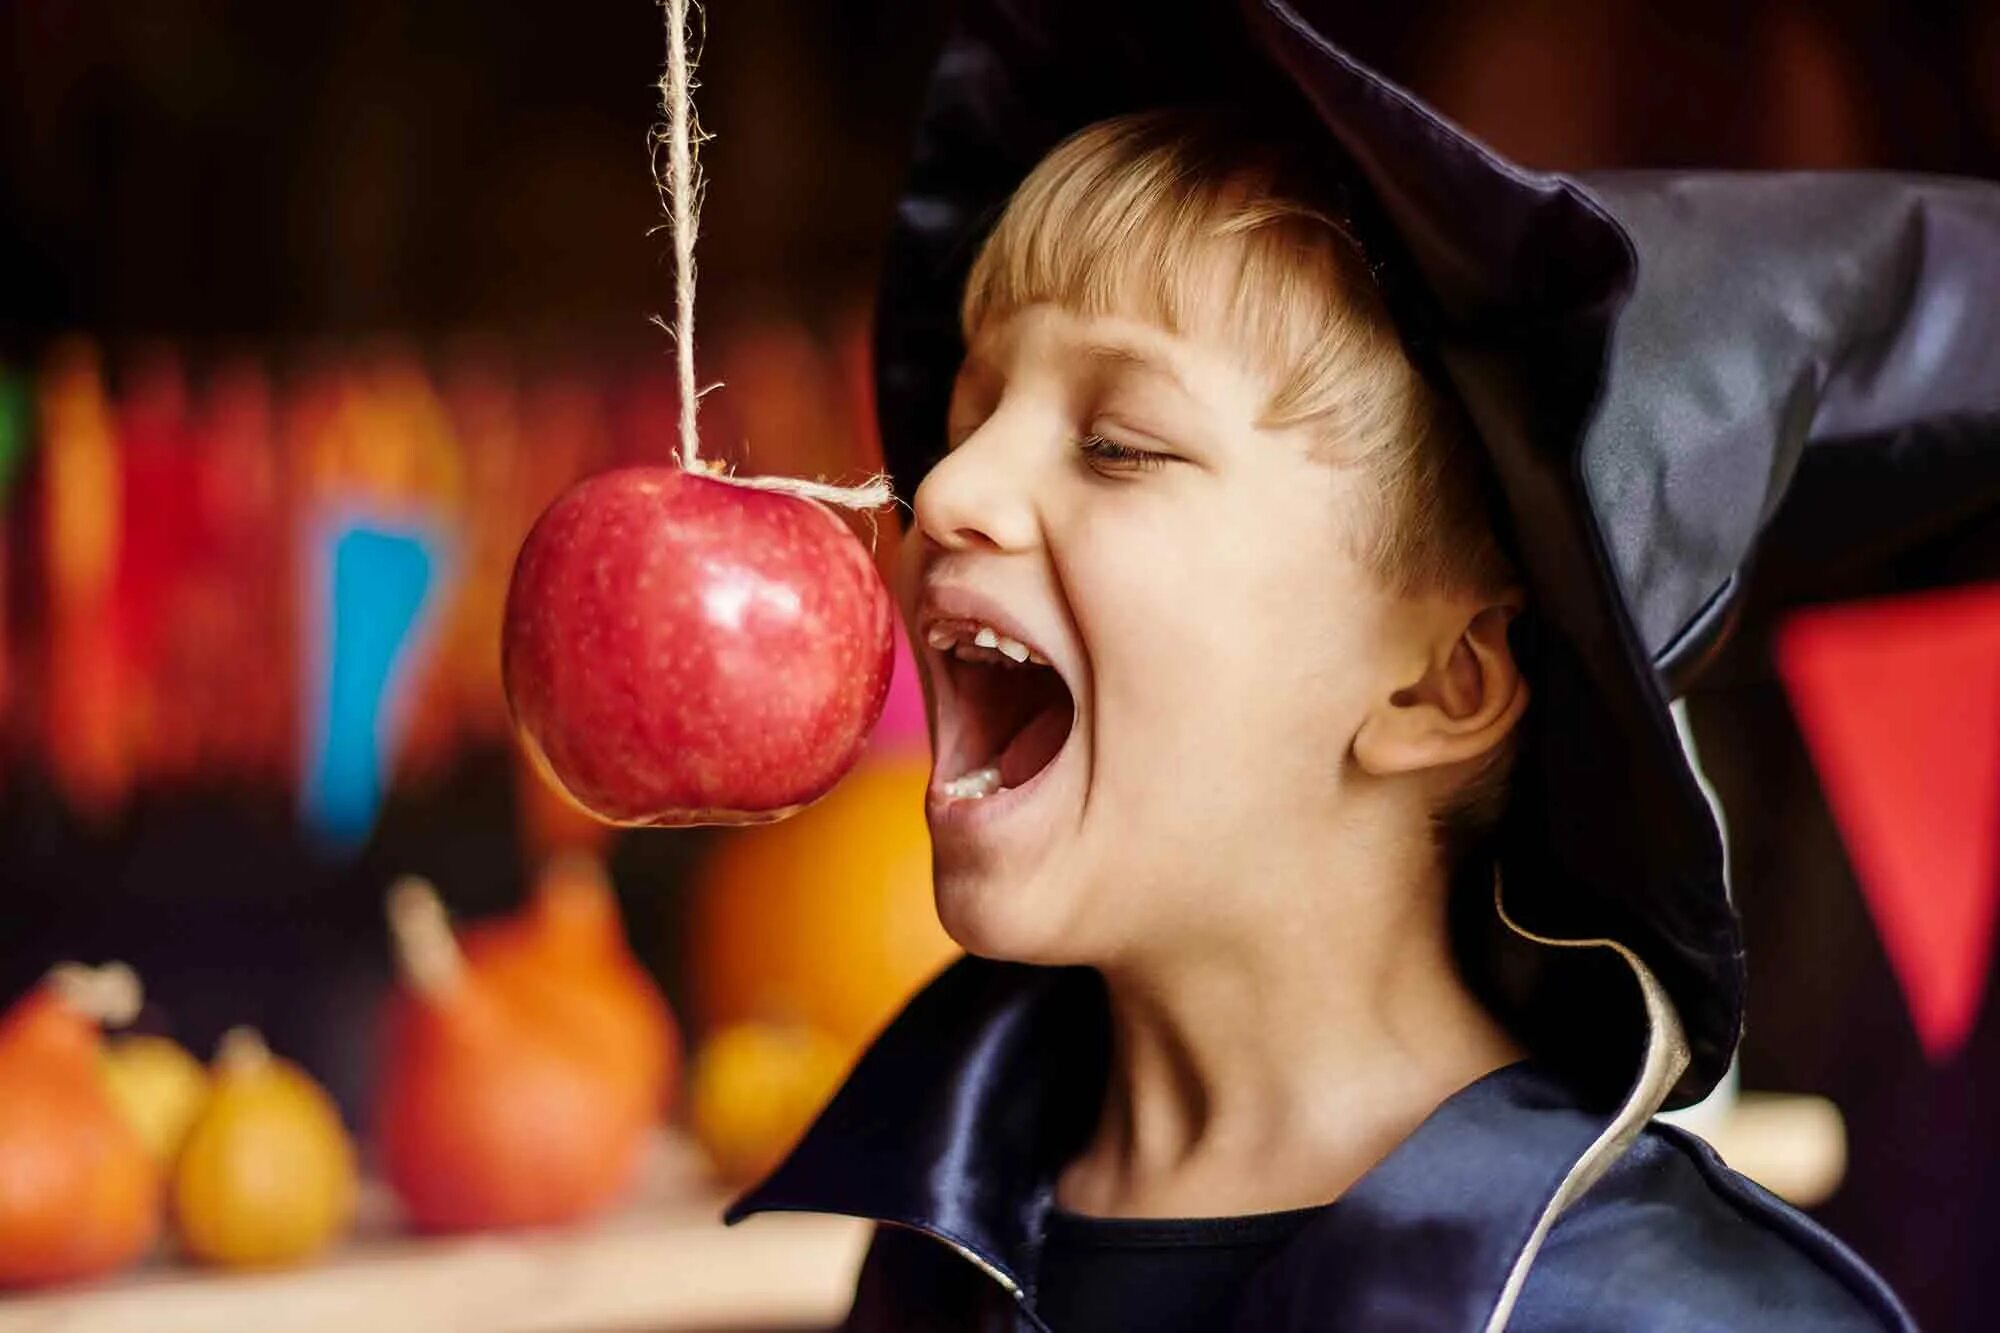 Съем яблок. Яблоки на веревке. Конкурсы с яблоками. Конкурс с яблоками на Хэллоуин. Конкурс яблоко на веревке.